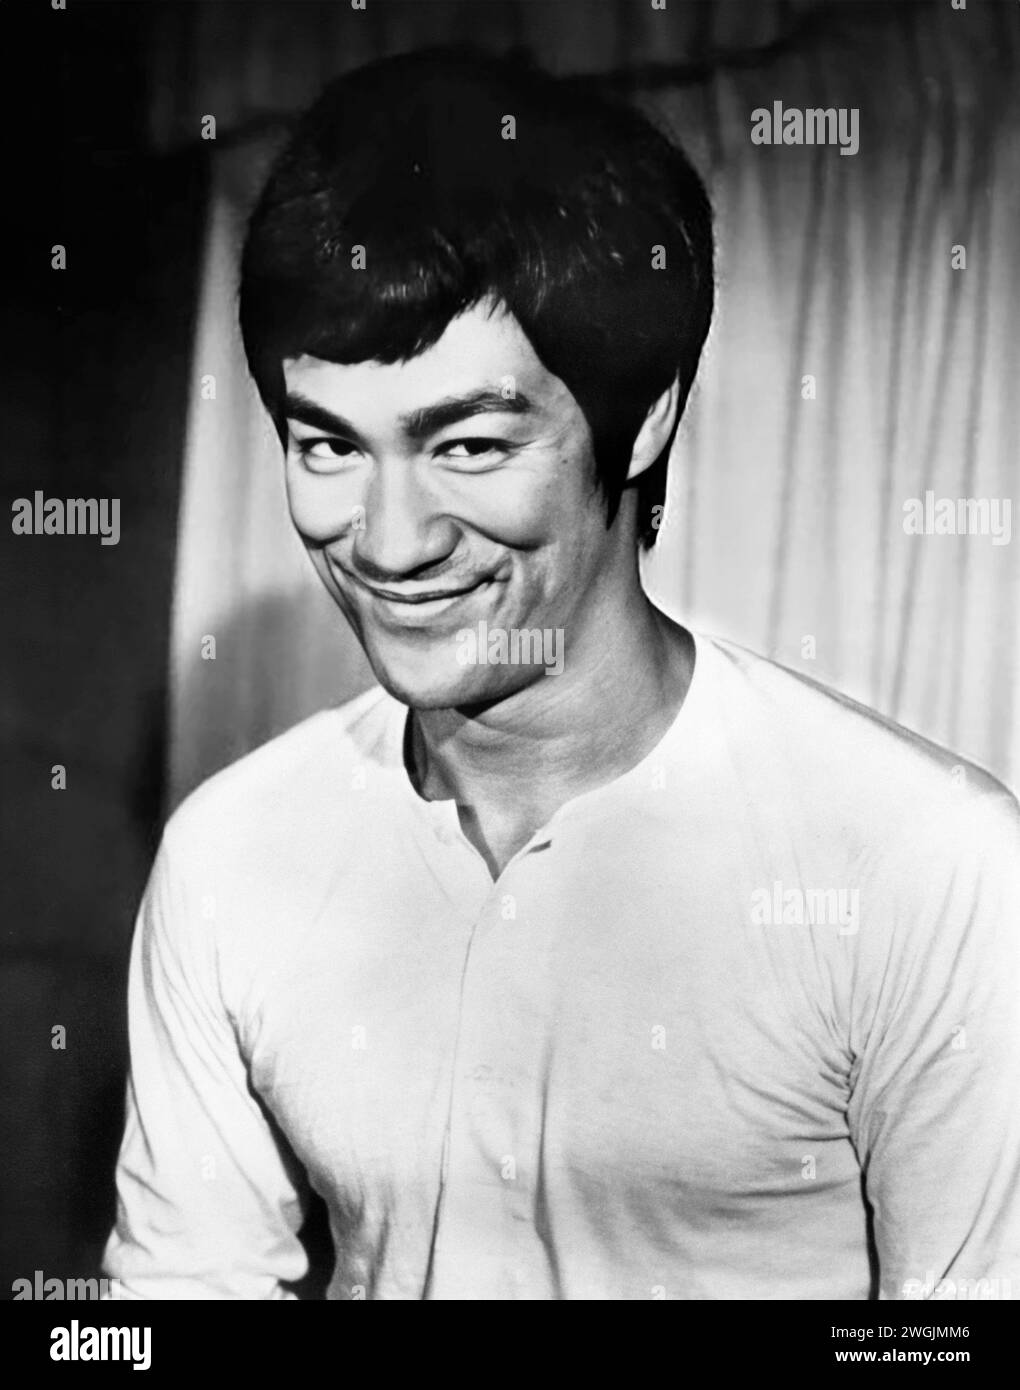 Bruce Lee. Ritratto dell'artista e attore marziale americano di Hong Kong, Bruce Lee (nato Lee Jun-fan, 1940-1973) f dal film Fists of Fury (aka The Big Boss), 1971 circa Foto Stock